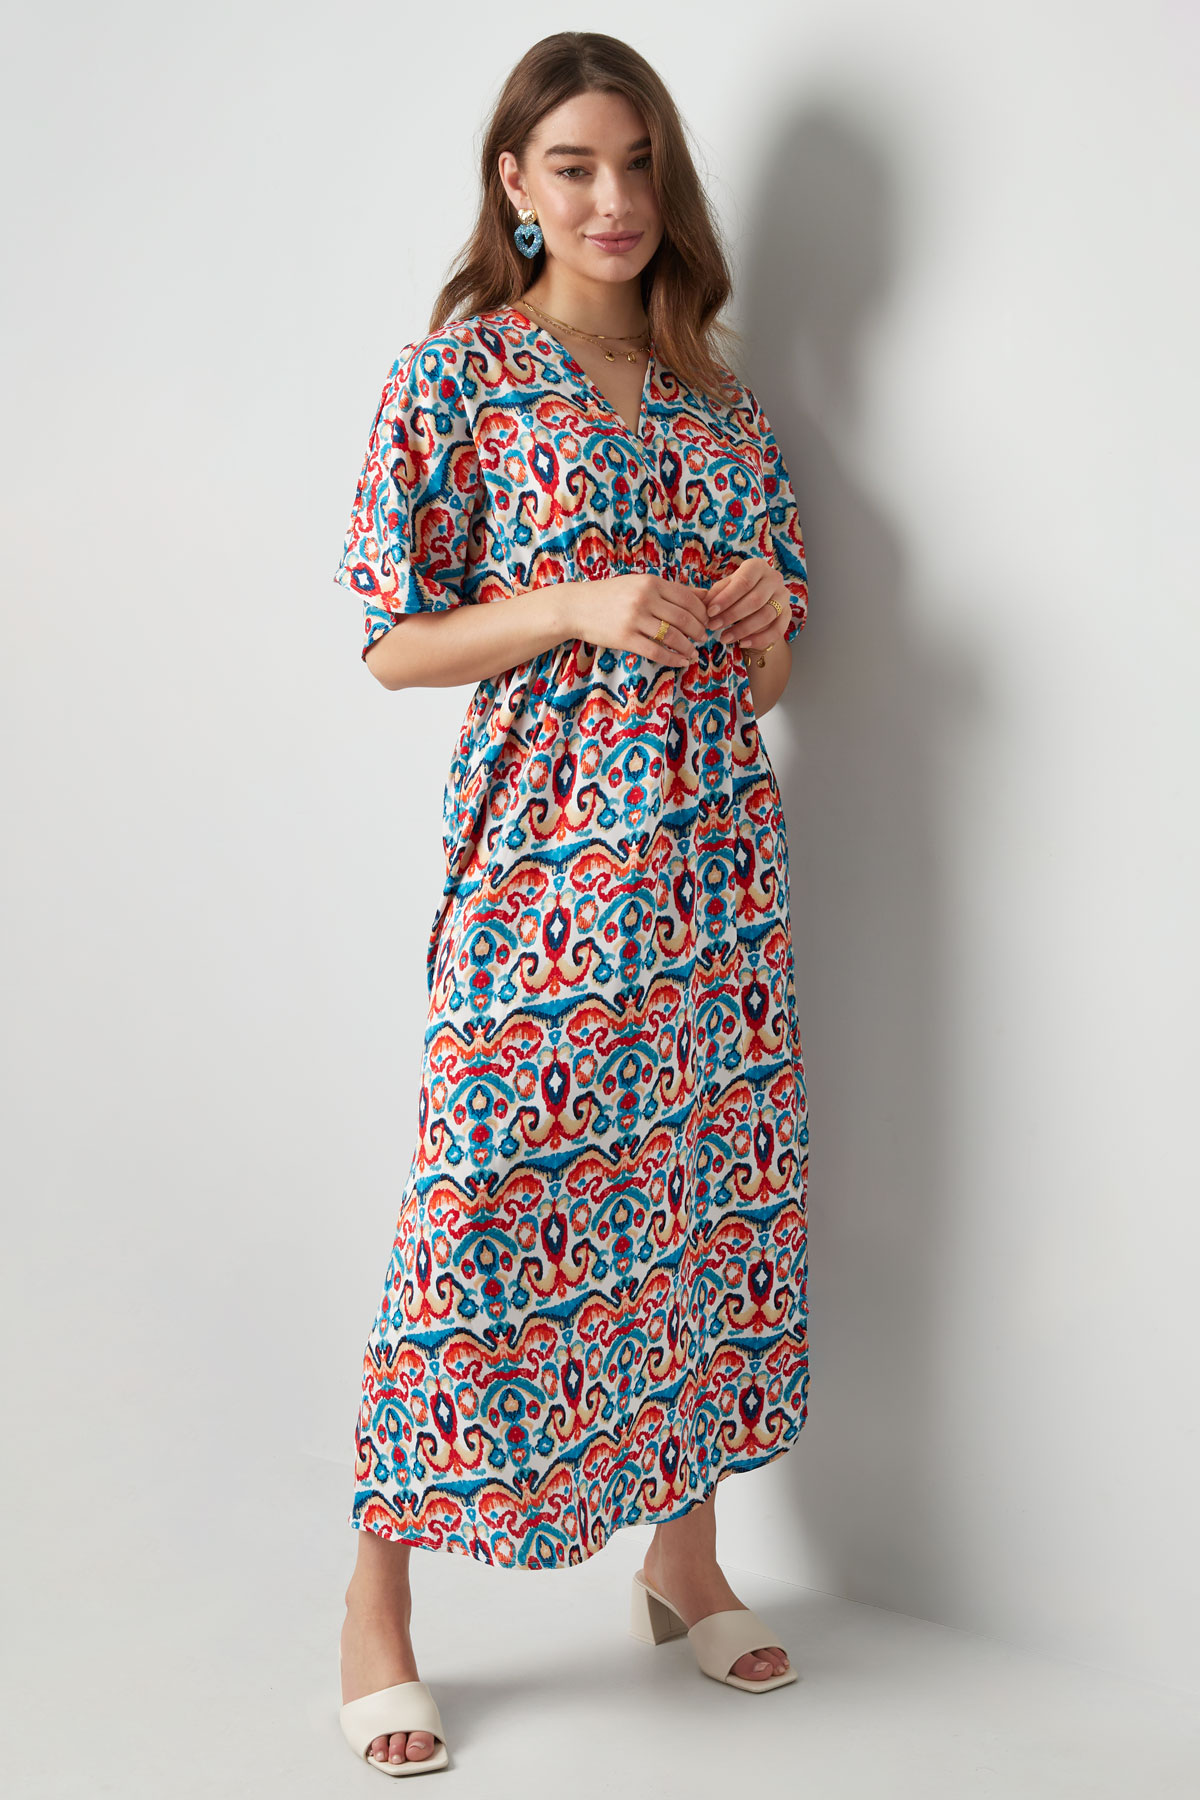 Langes Kleid mit Print - Rot/Blau - S h5 Bild6